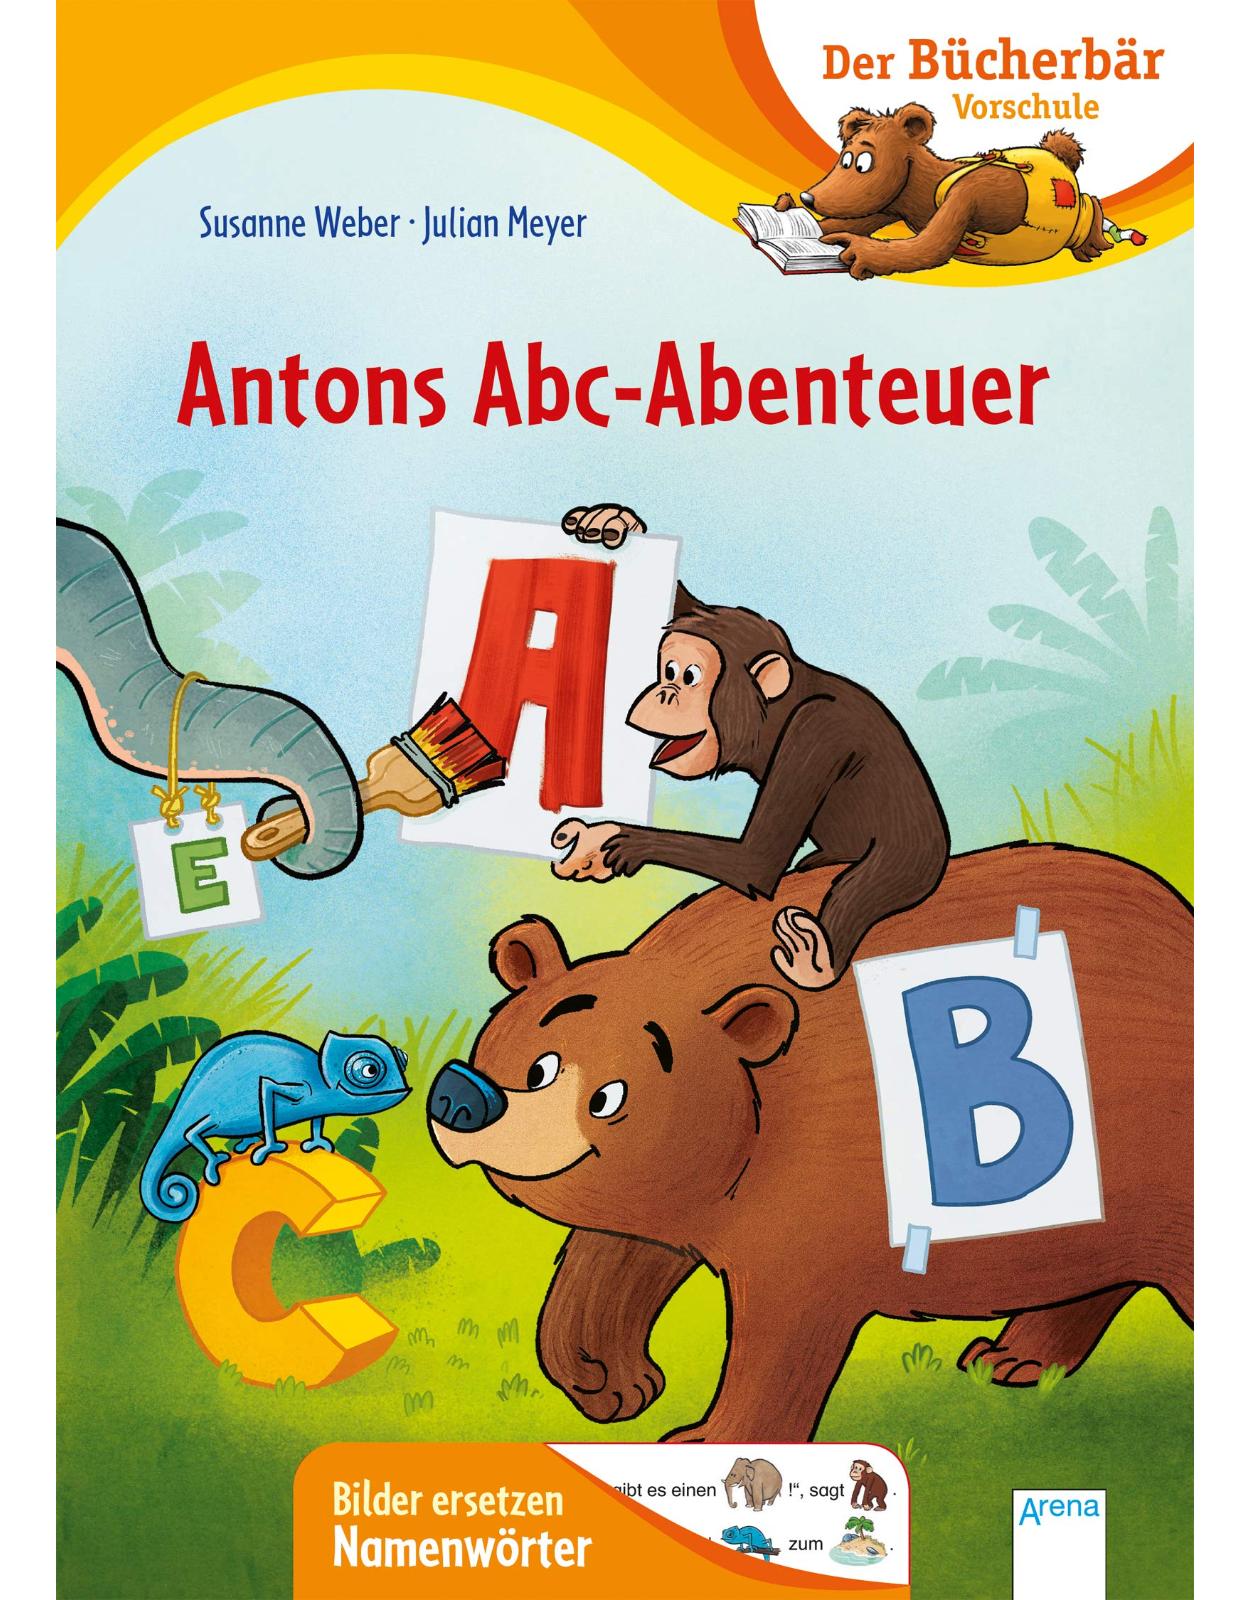 Antons Abc-Abenteuer